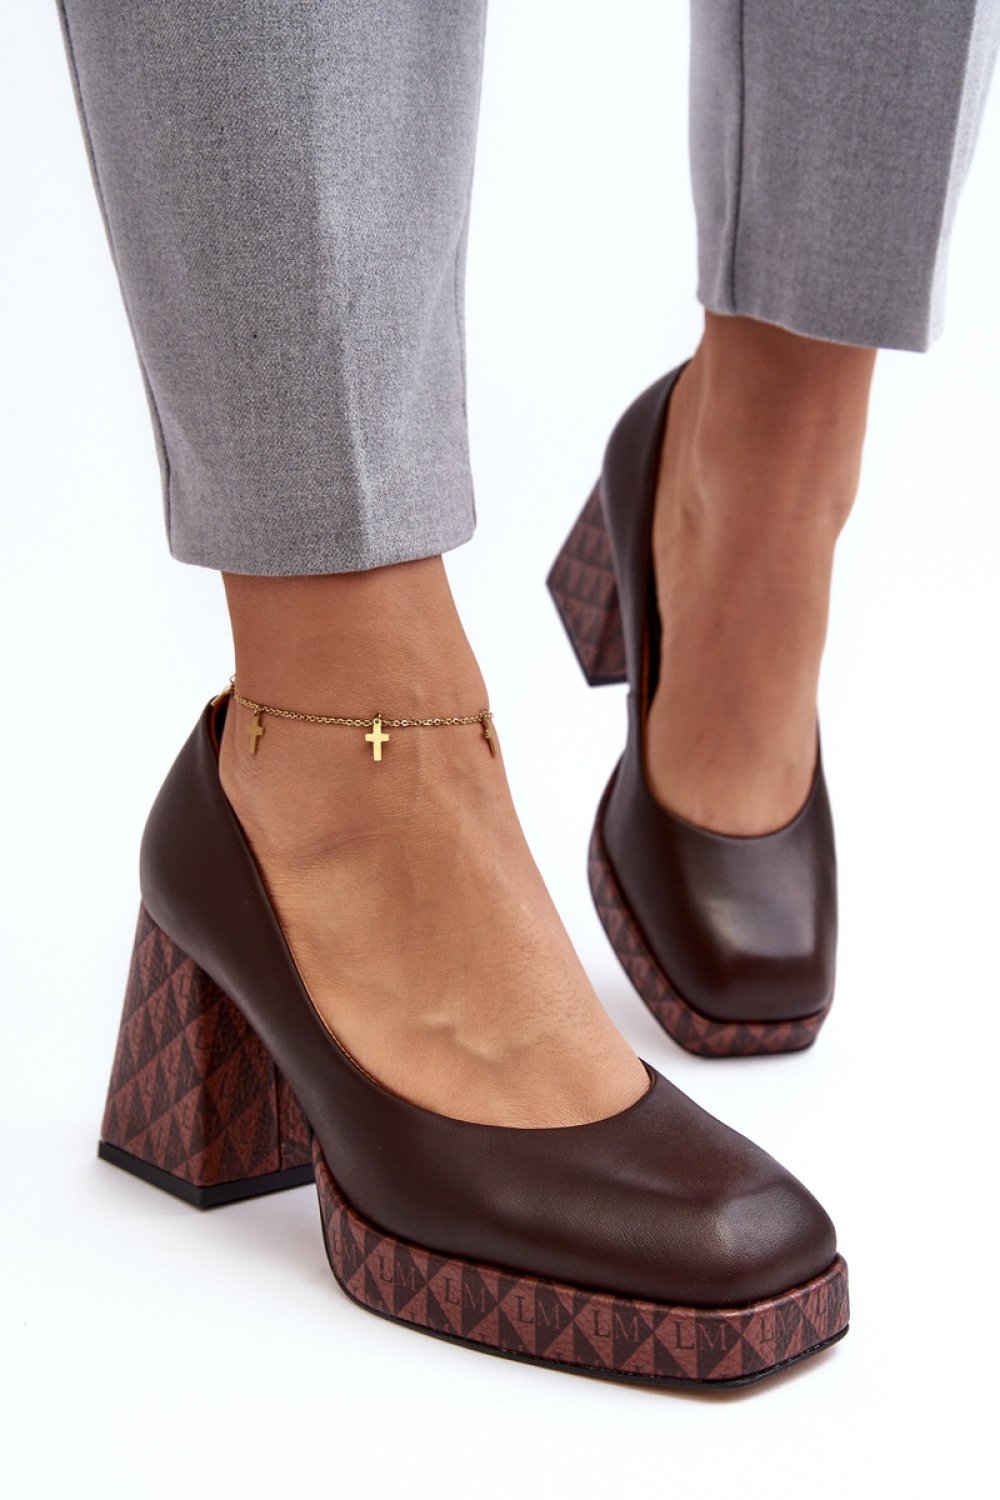  Block heel pumps model 188523 Step in style  brown